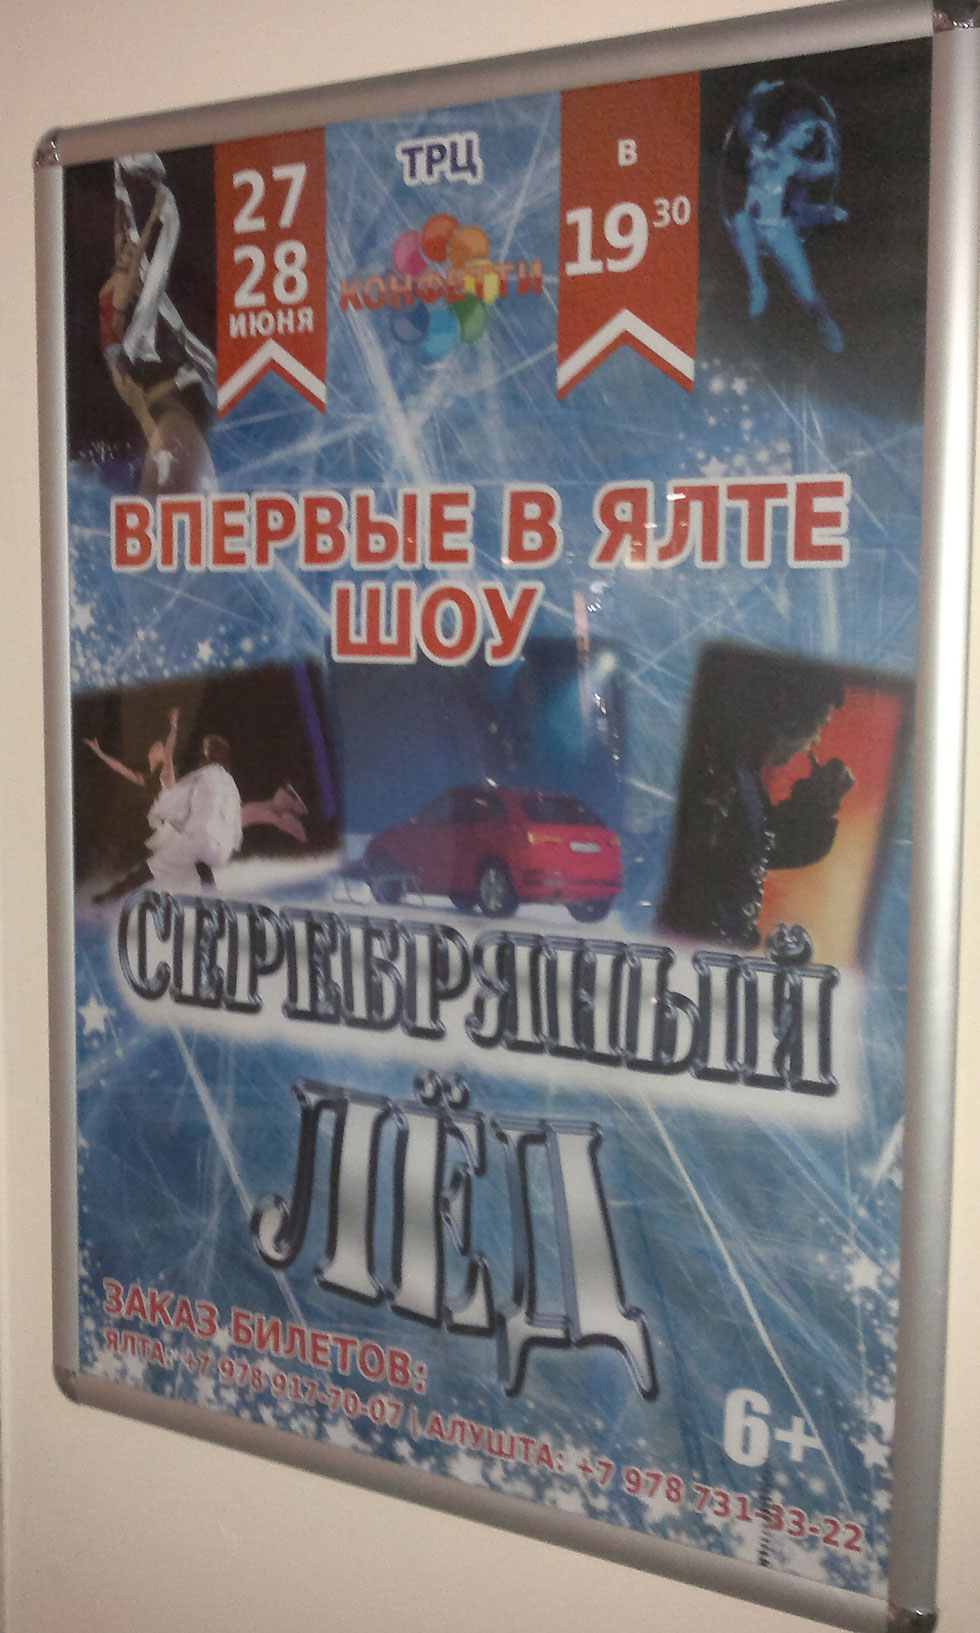 Серебряный лёд - шоу в Ялте